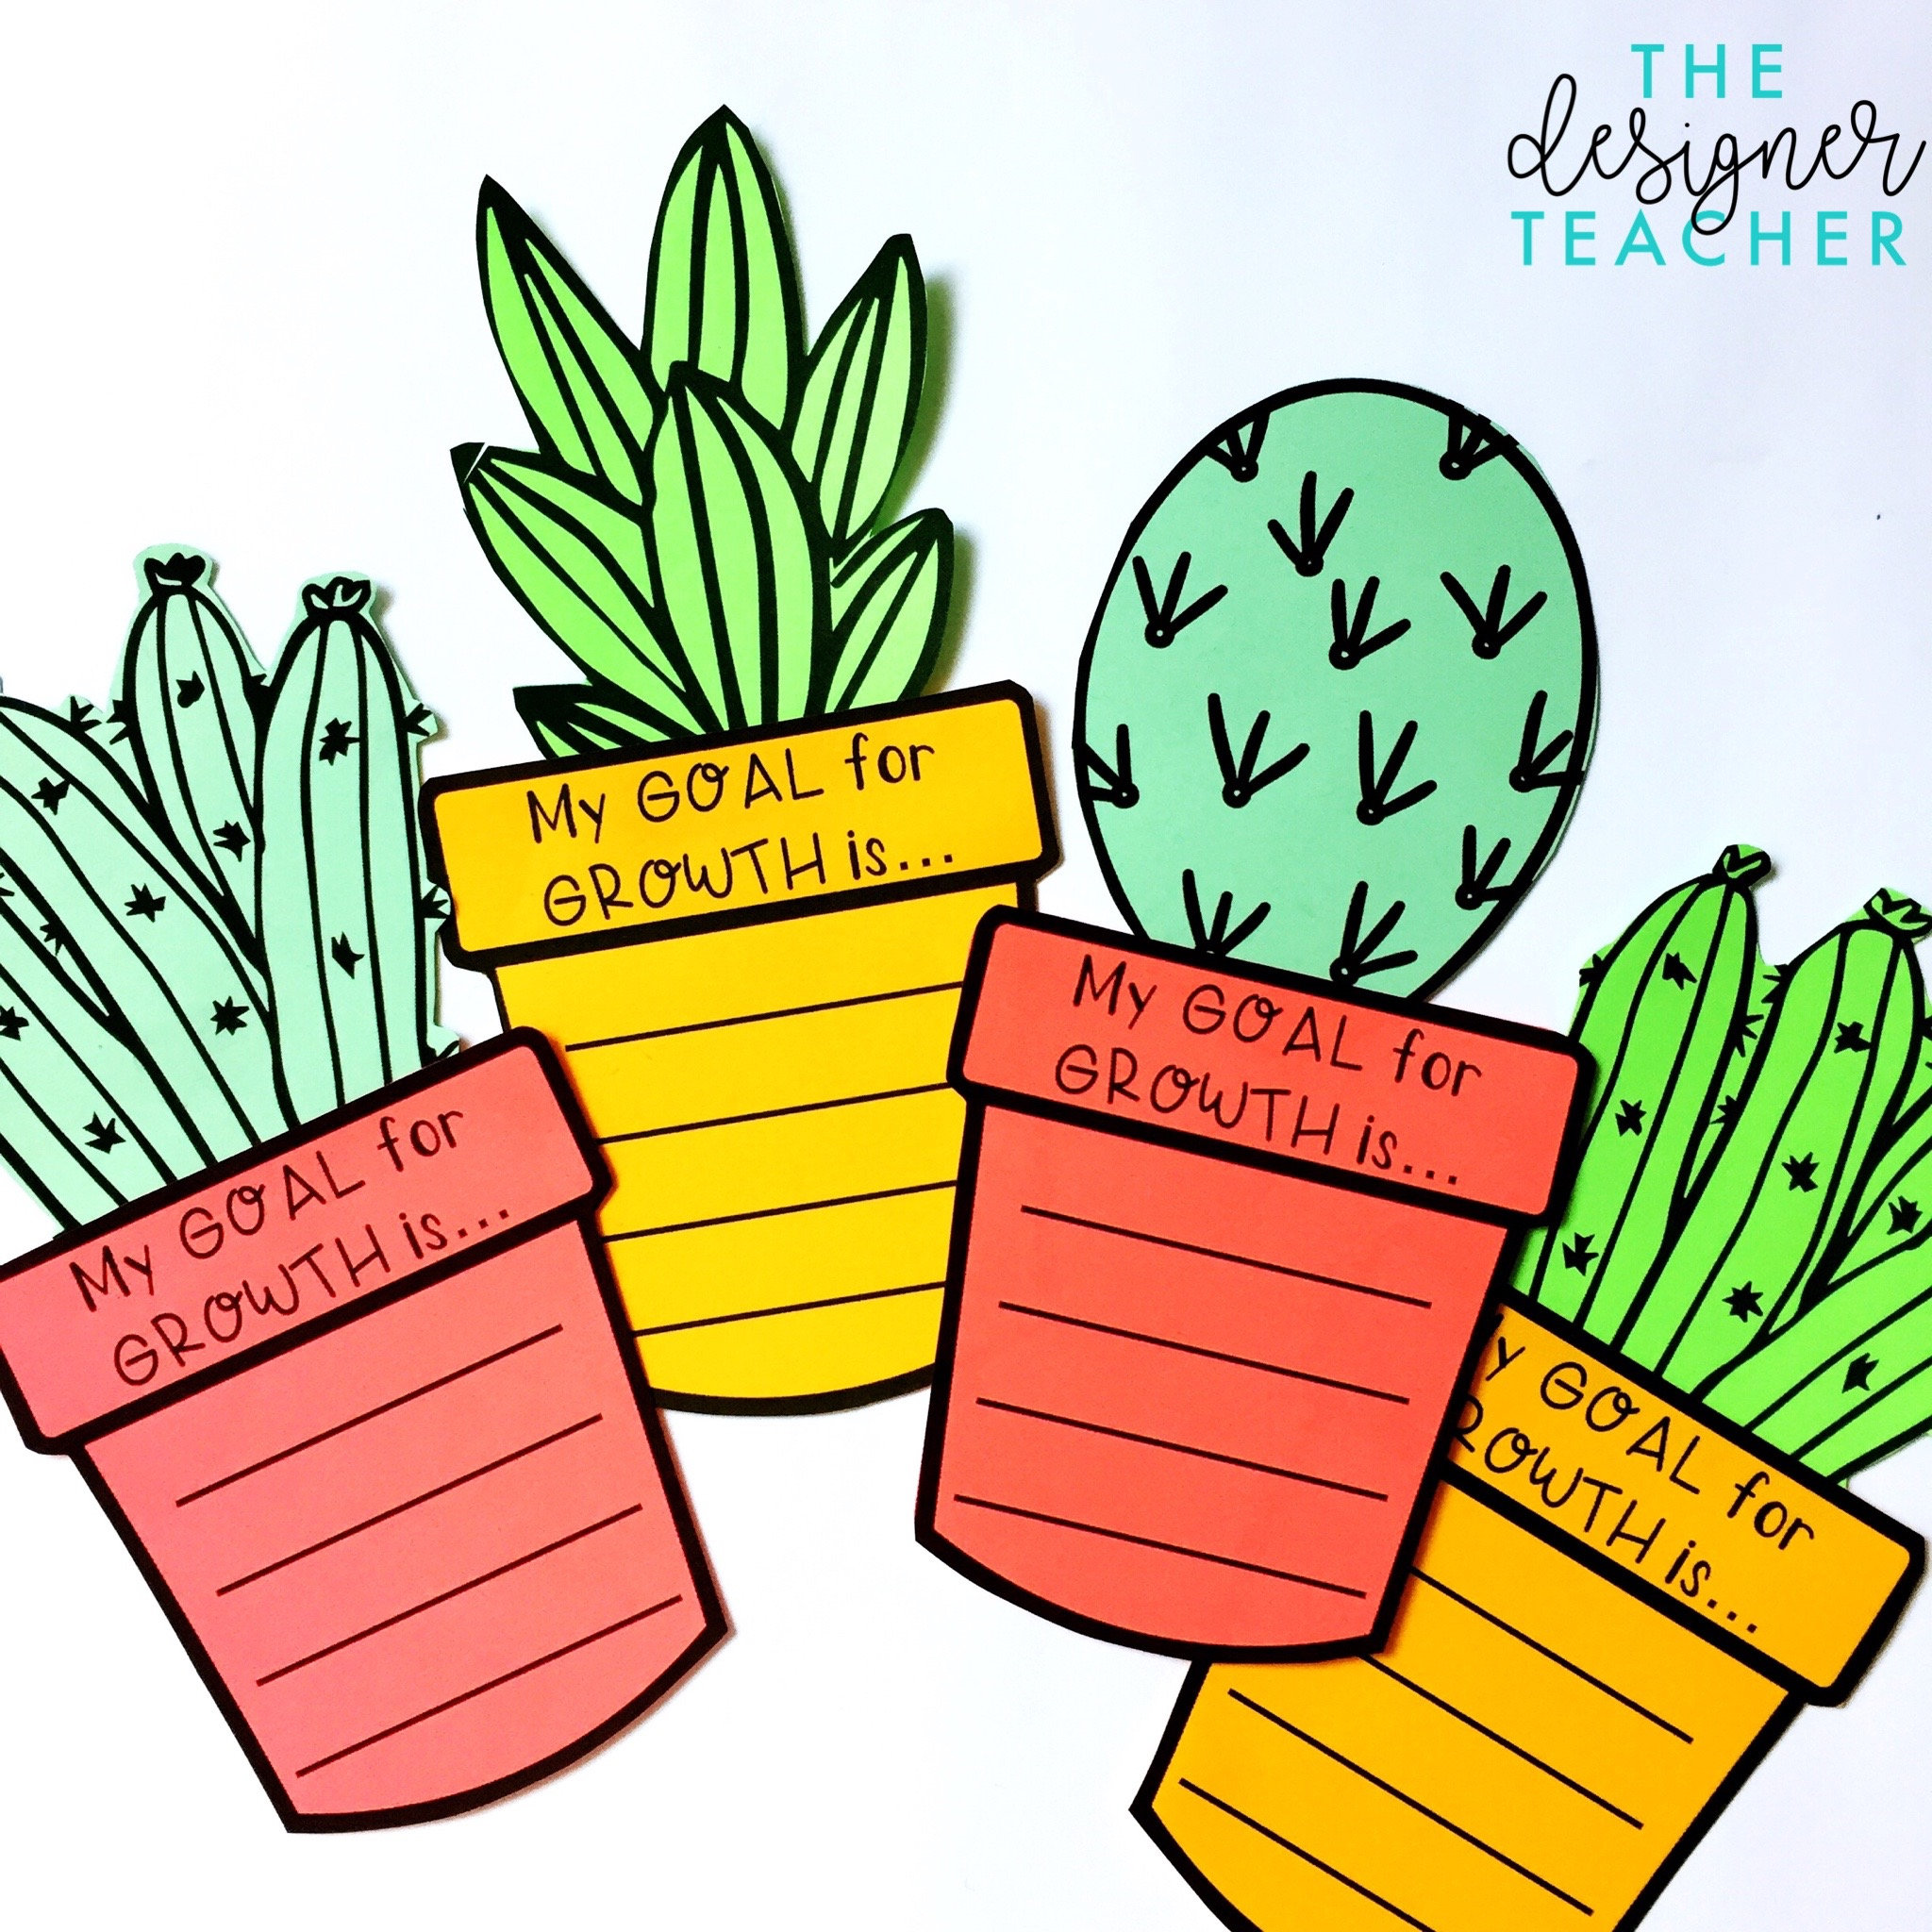 Cactus Goals Bulletin Board – My WordPress